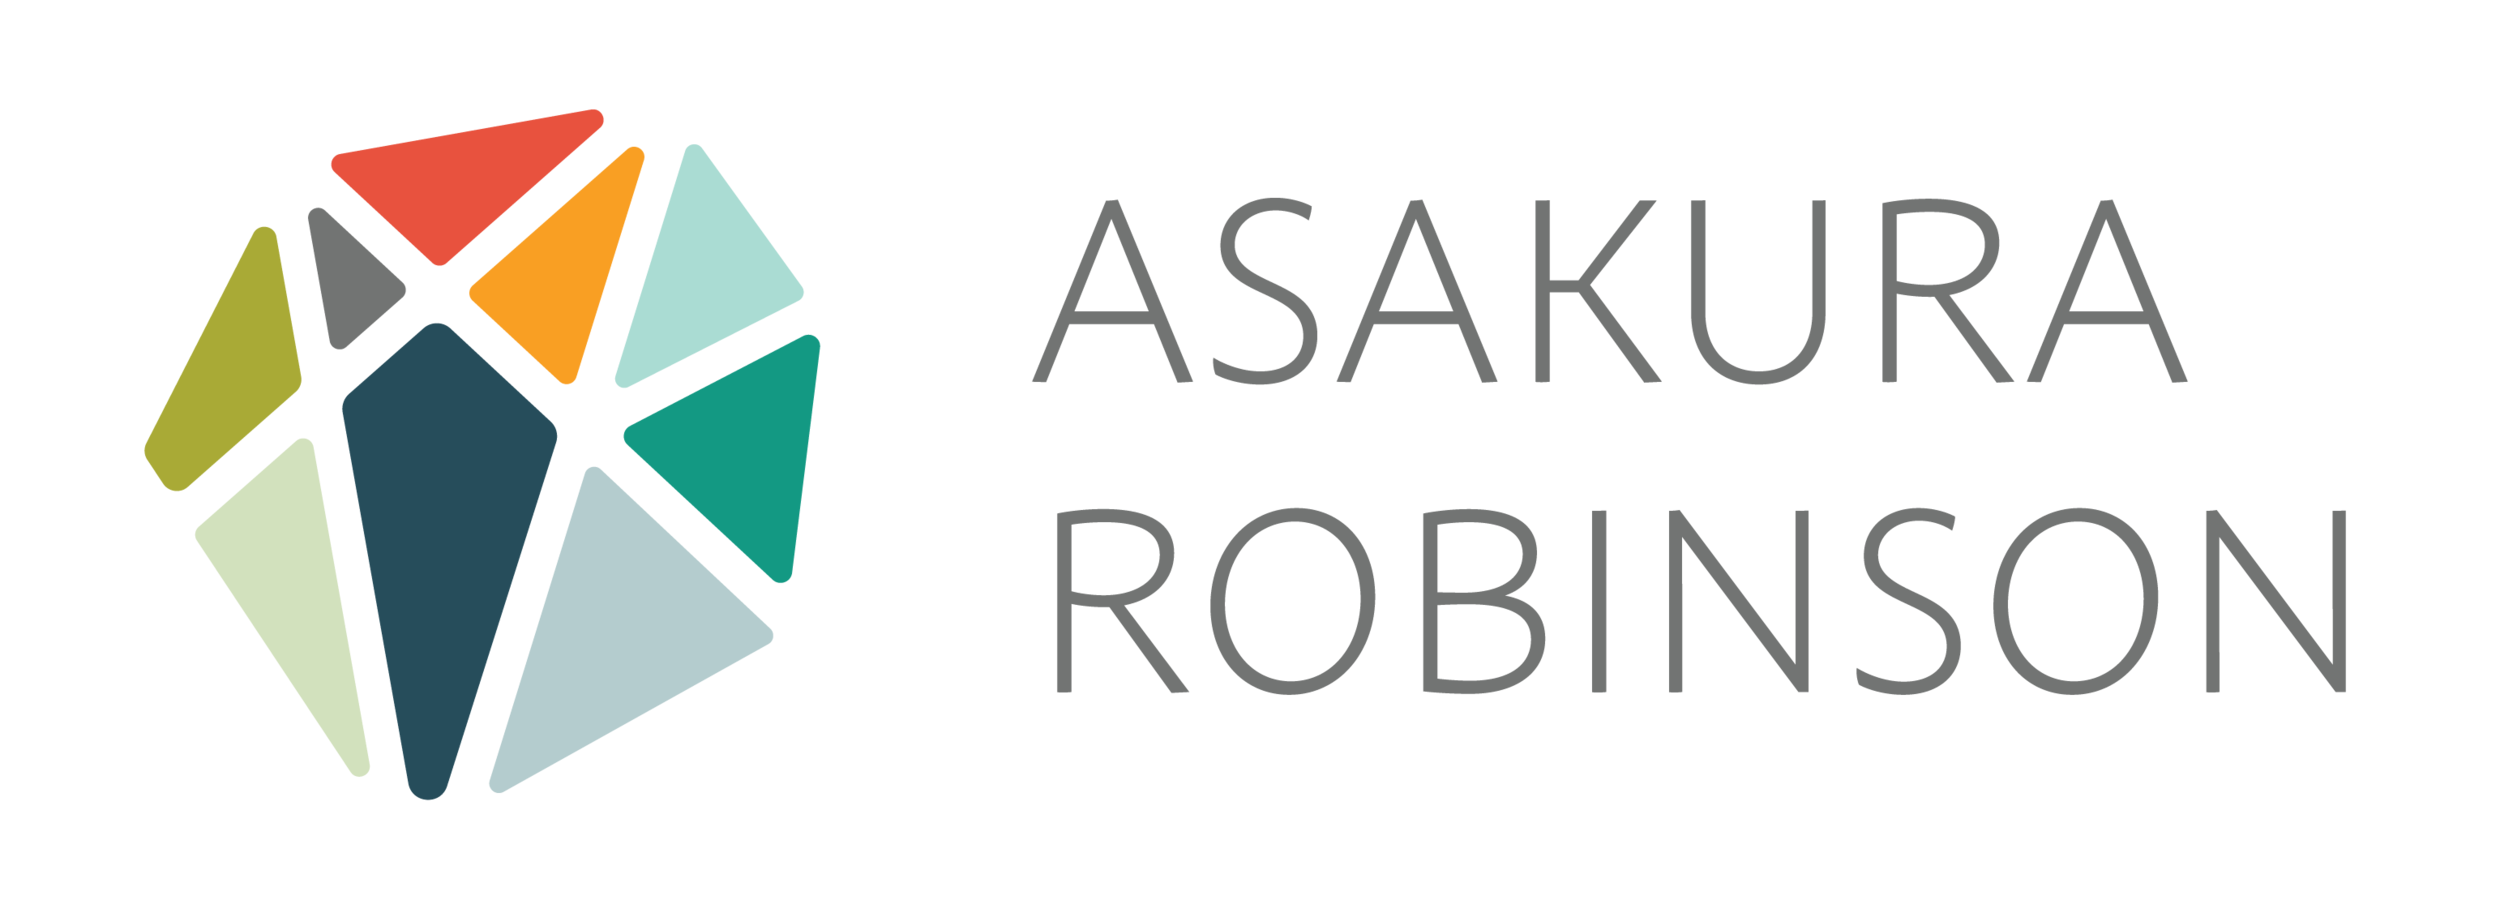 asakura-robinson-logo.png